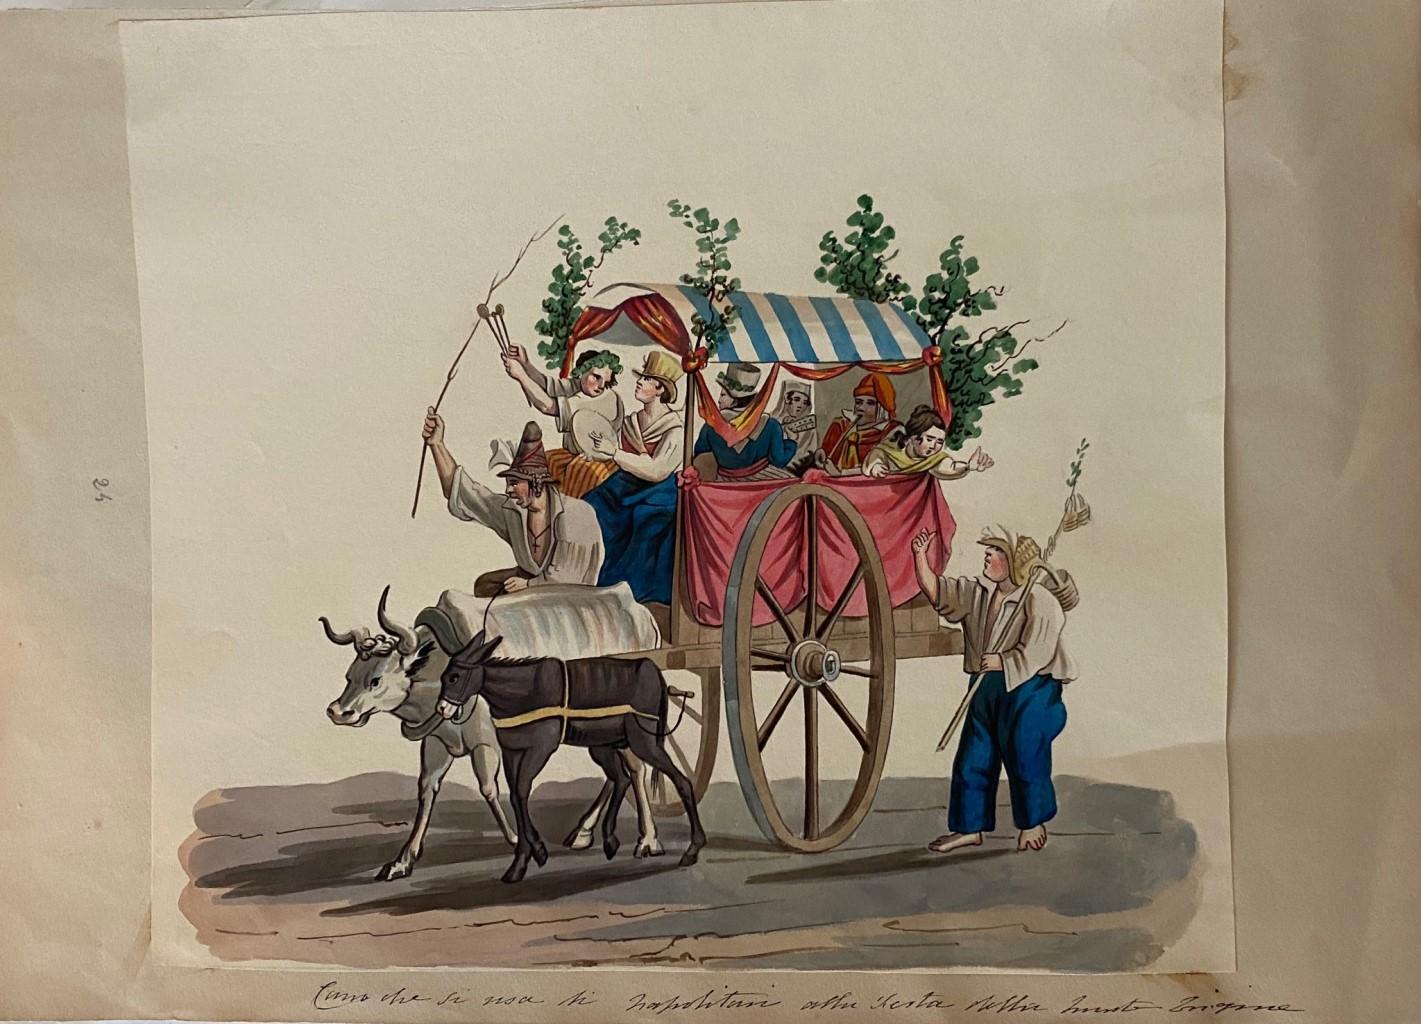 Wagon with Neapolitans ist eine prächtige Gouache-Zeichnung auf Papier des italienischen Künstlers Anonymous Artist of 20th Century.

Der Erhaltungszustand der Kunstwerke ist ausgezeichnet. 

Nicht unterzeichnet. Nicht nummeriert.

Blattgröße: 27 x